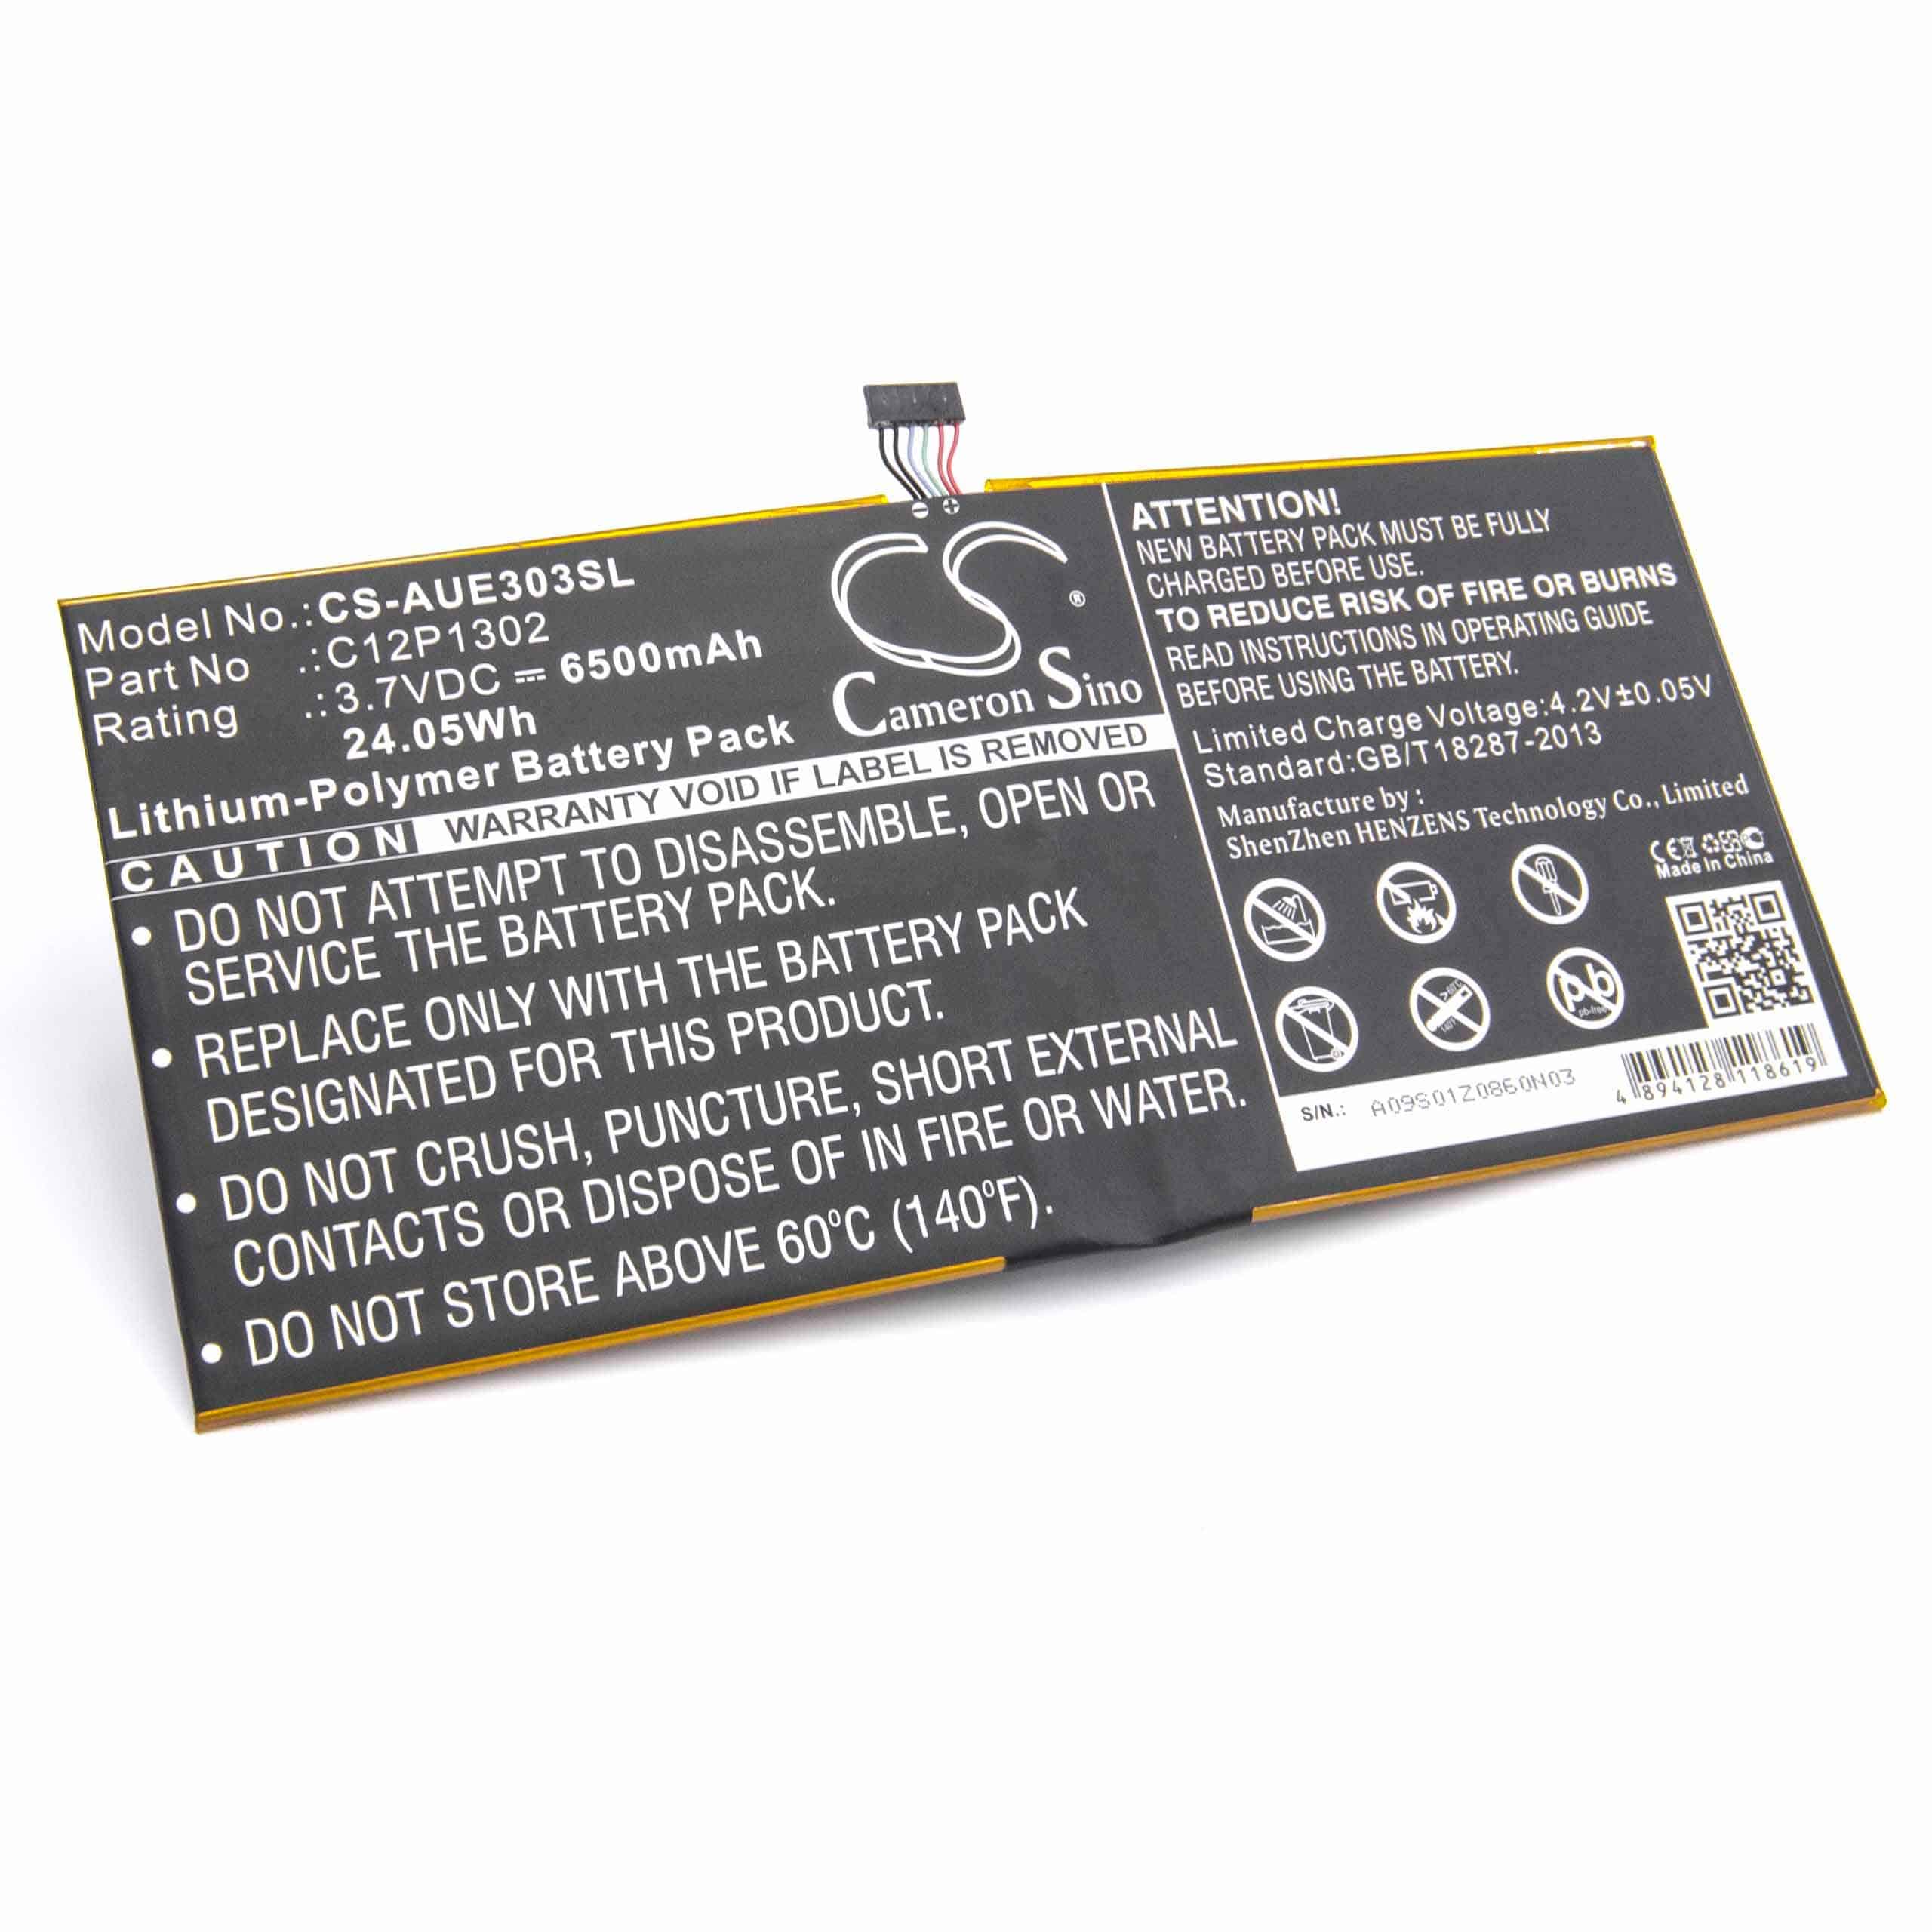 Batterie remplace Asus C12P1302 pour ordinateur portable - 6500mAh 3,7V Li-polymère, noir